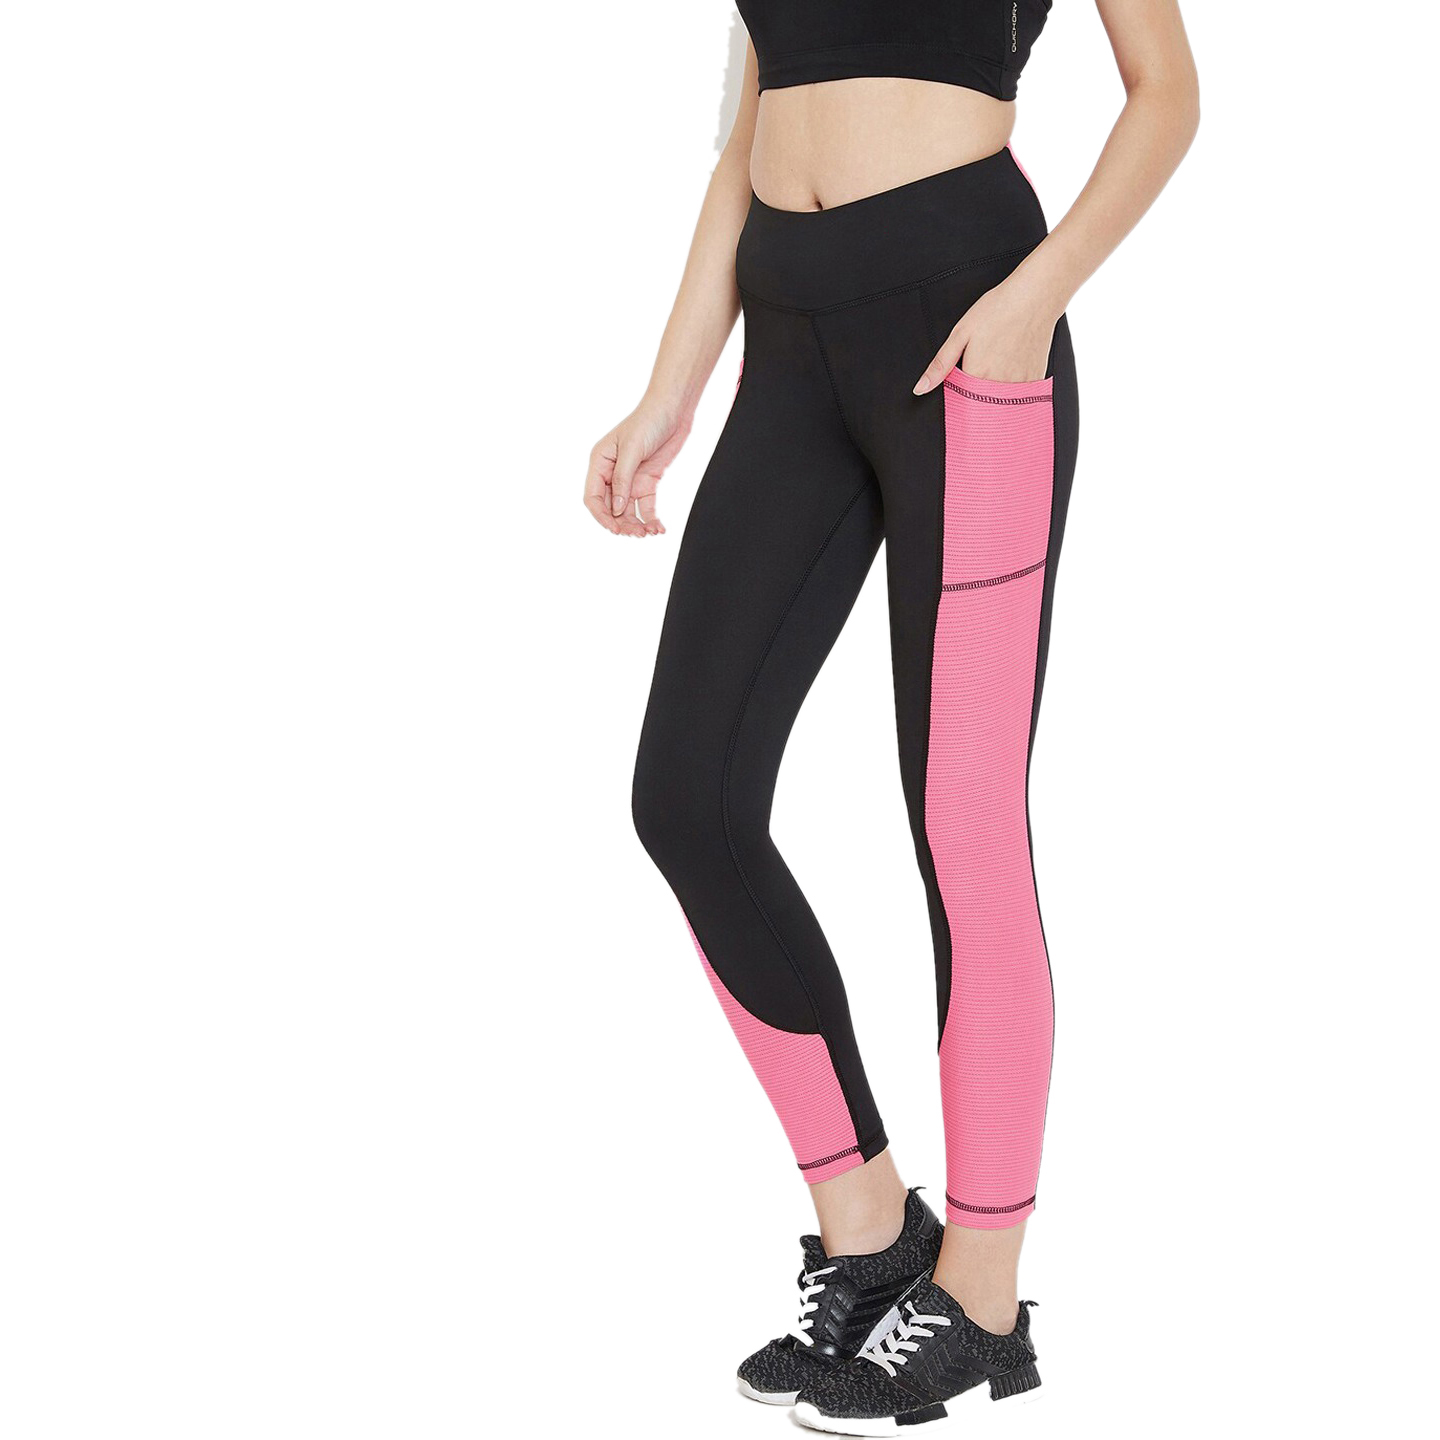 Black & Pink colorblocked Gym Leggingd